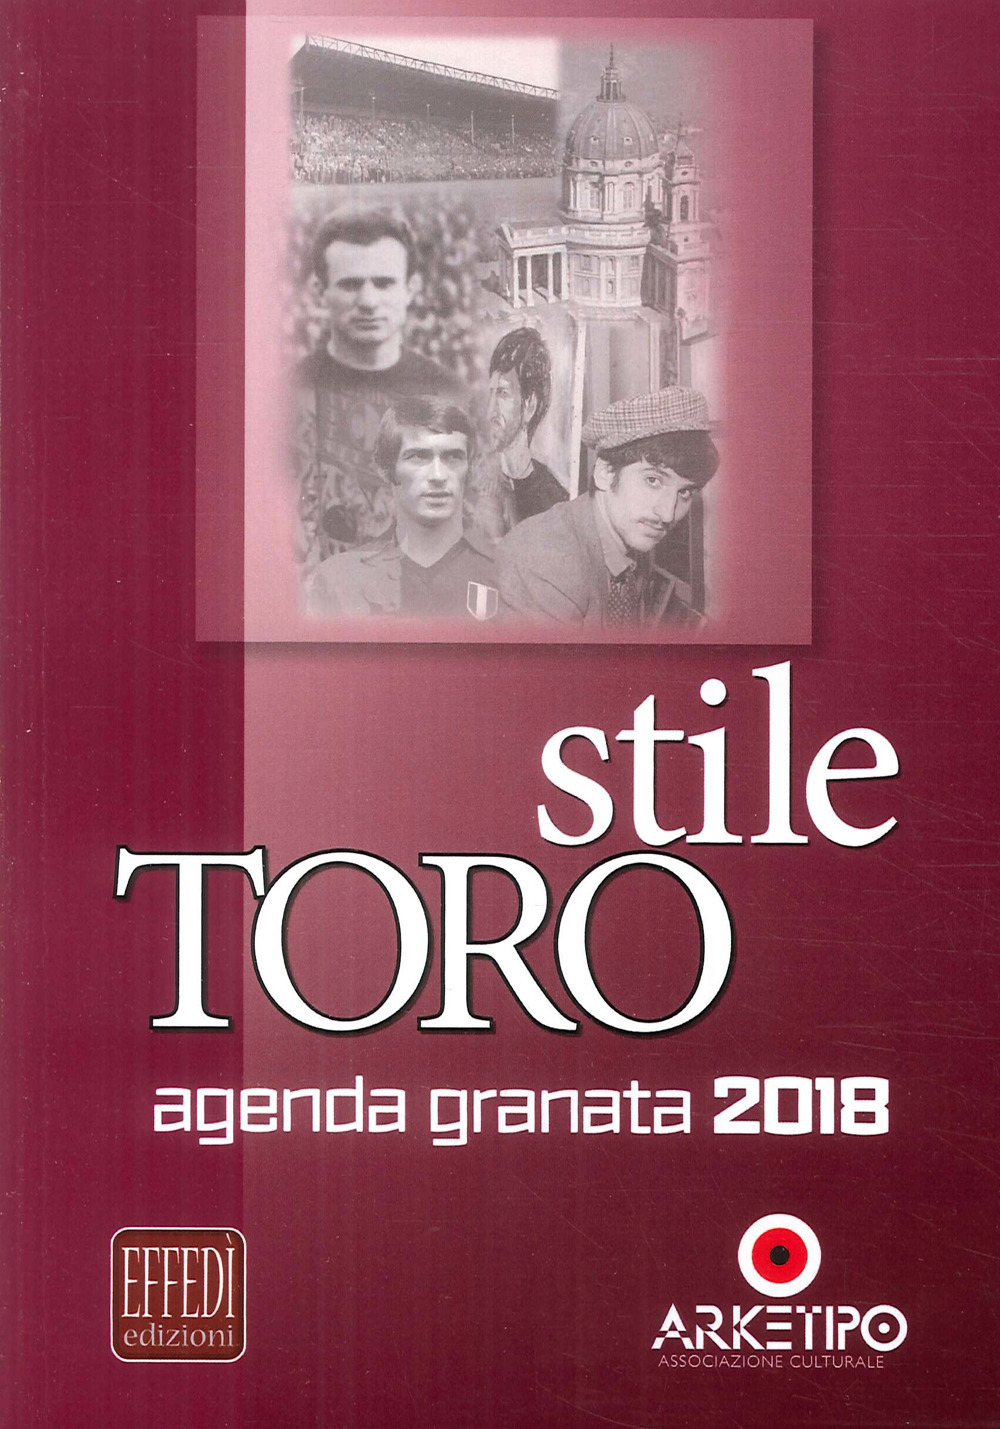 Stile Toro. Agenda granata 2018